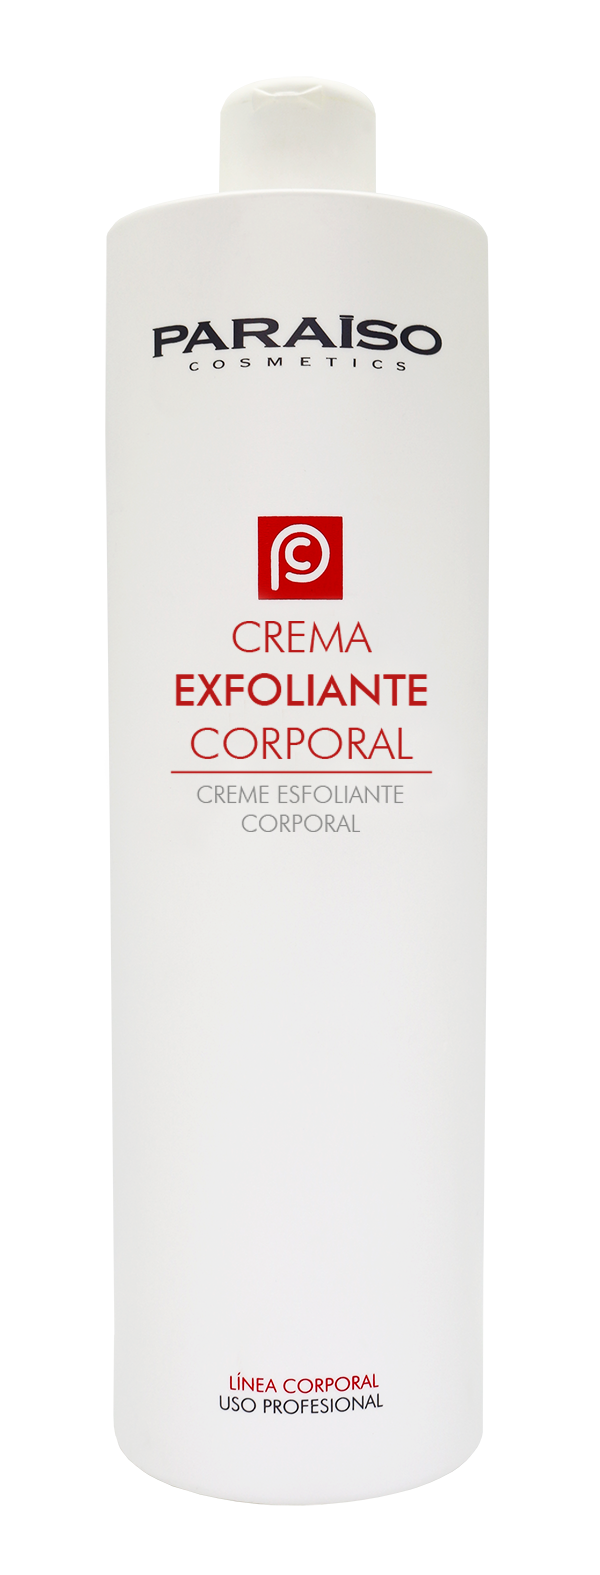 Crema Exfoliante Corporal